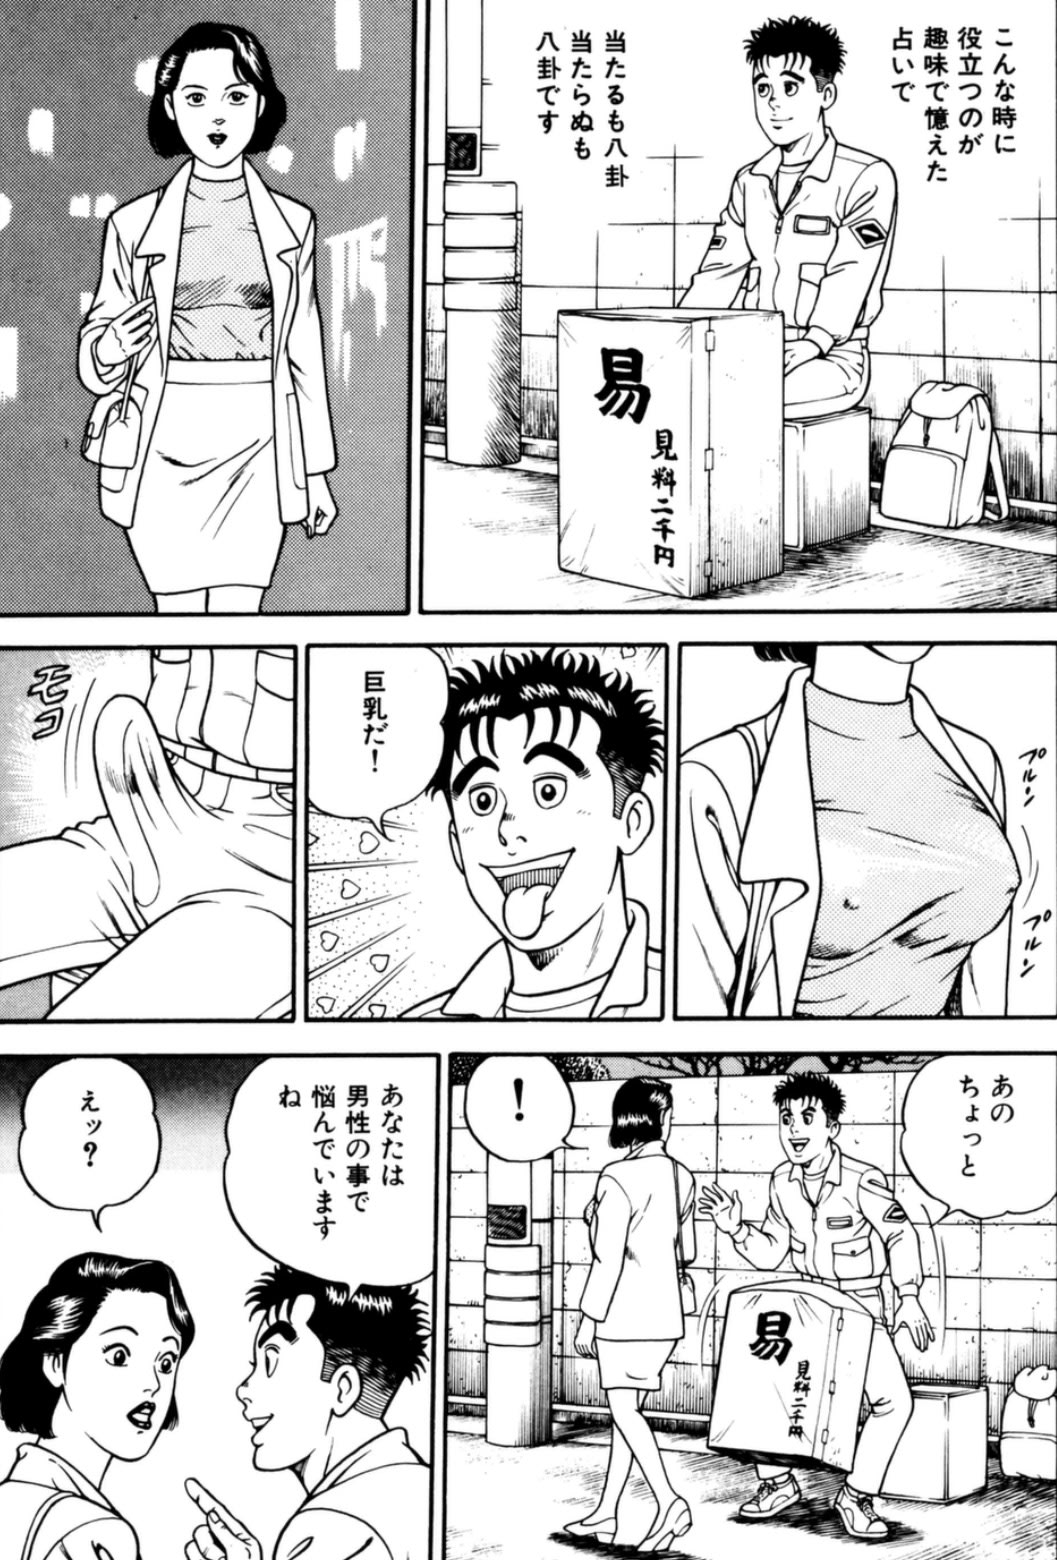 男 日本海 感想 疲れている時に読むと最高のバカエロ漫画 2ページ目 2ページ マンバ